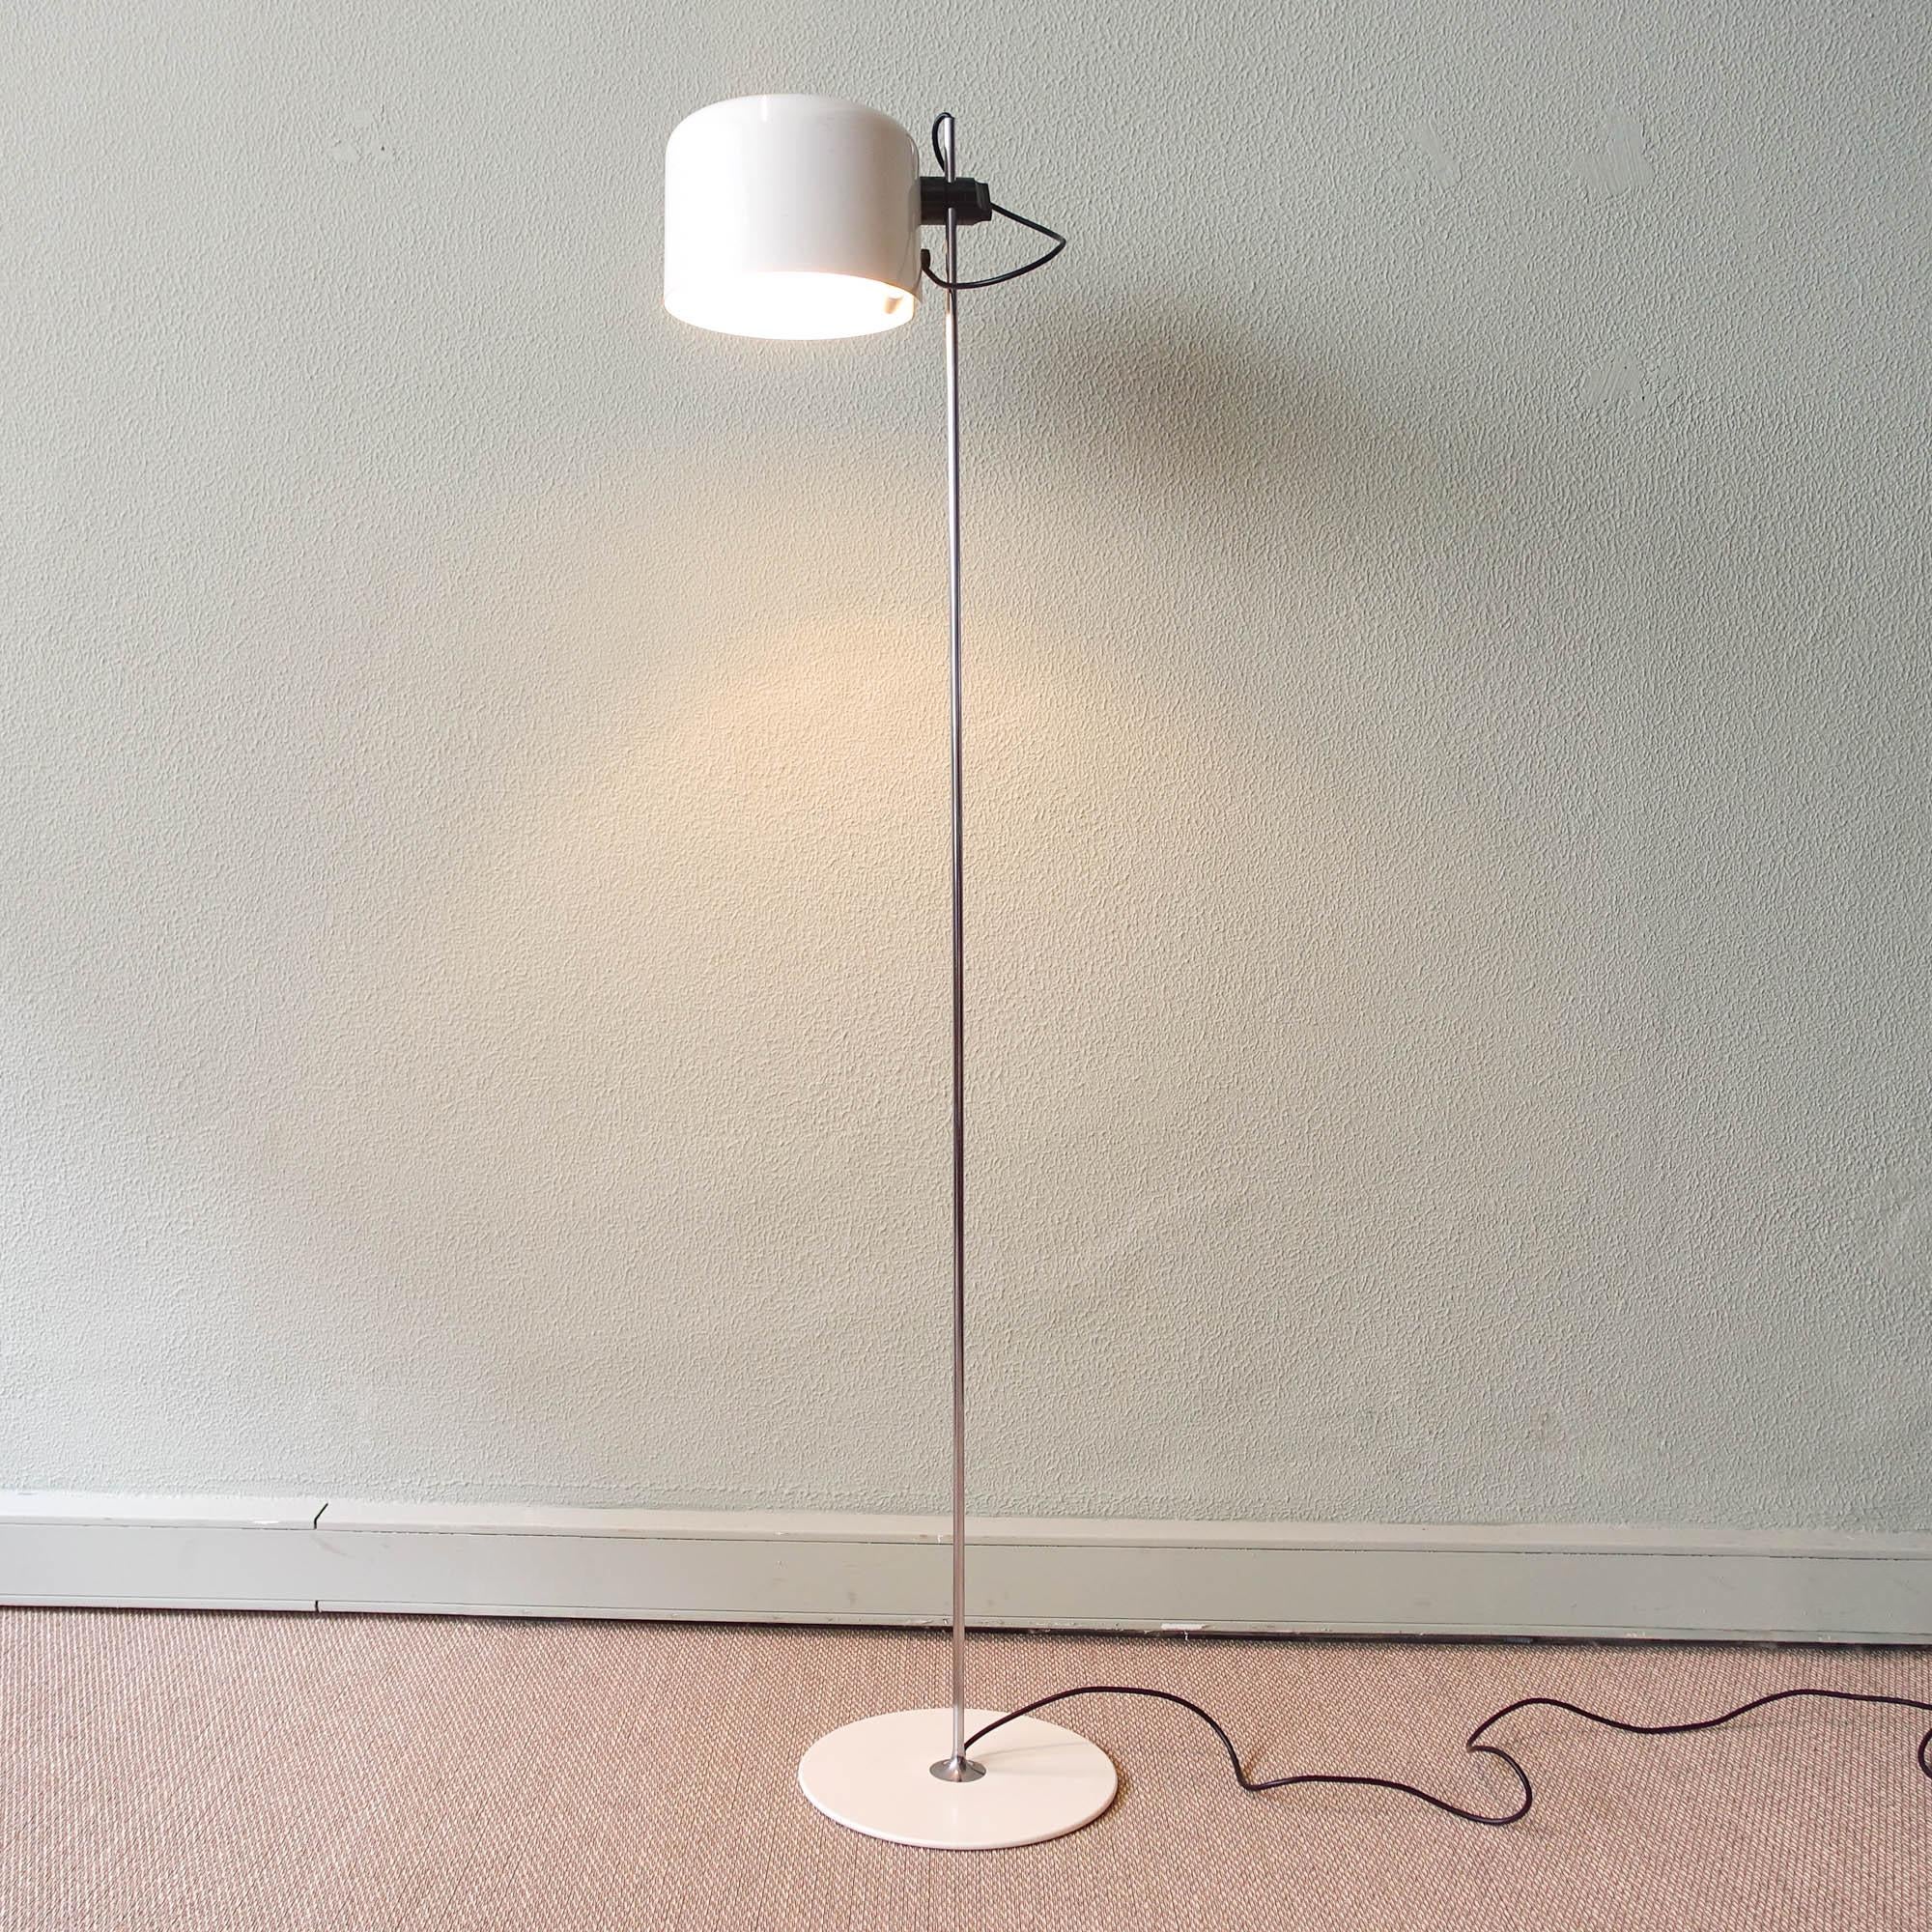 Mid-Century Modern Coupé White Floor Lamp by Joe Colombo for Oluce, 1967